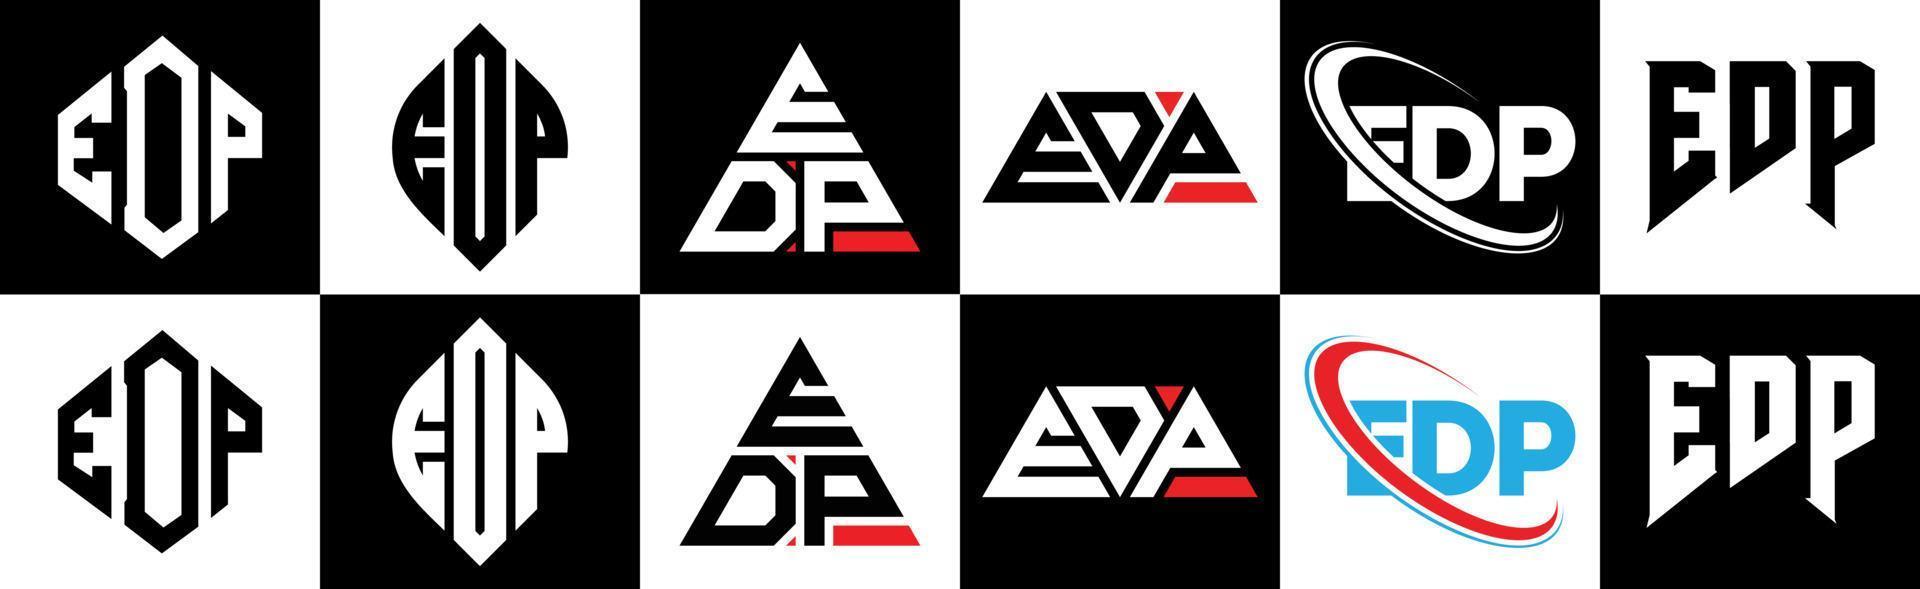 edp-Buchstaben-Logo-Design in sechs Stilen. edp-Polygon, Kreis, Dreieck, Sechseck, flacher und einfacher Stil mit schwarz-weißem Buchstabenlogo in einer Zeichenfläche. edp minimalistisches und klassisches Logo vektor